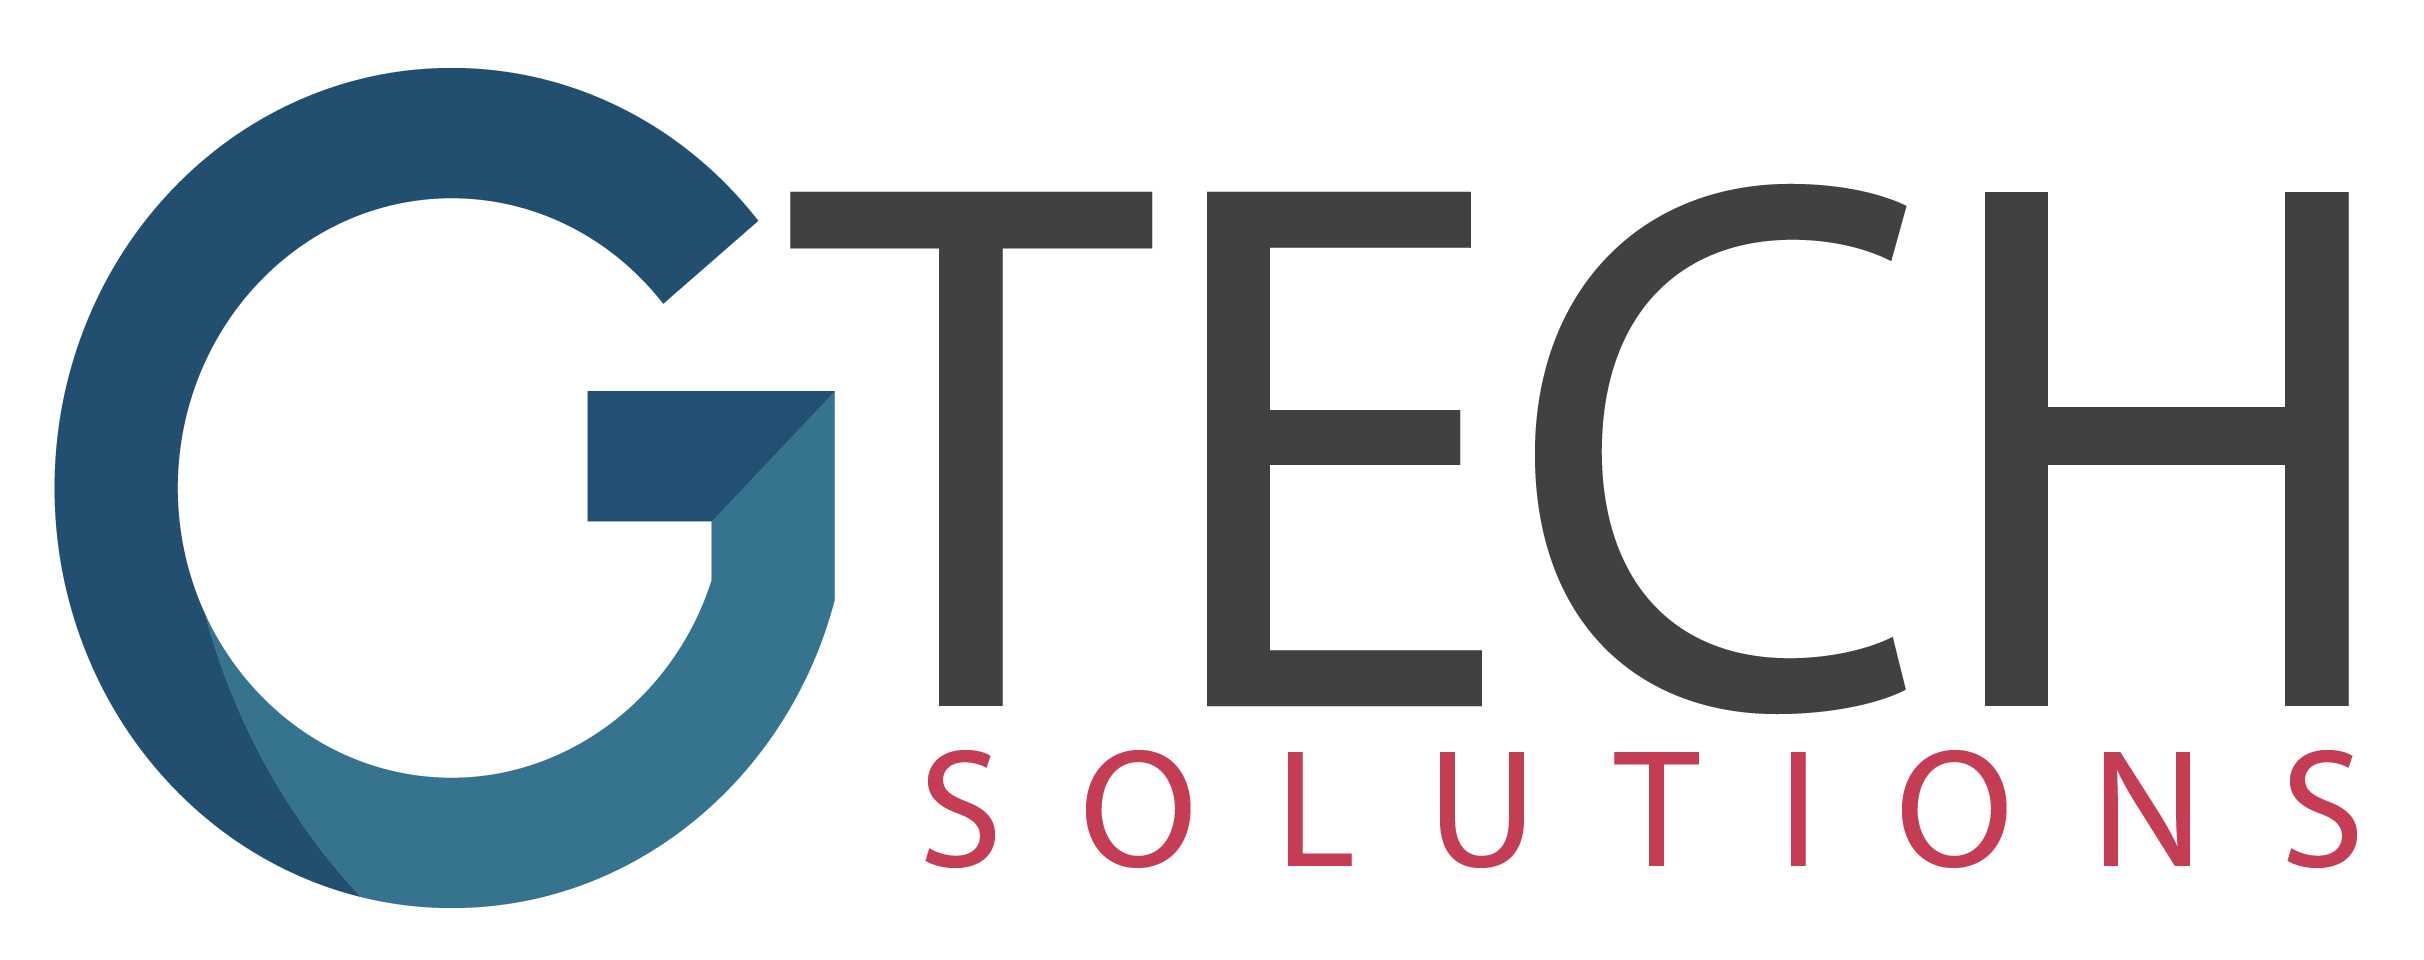 g-tech-solutions-logo